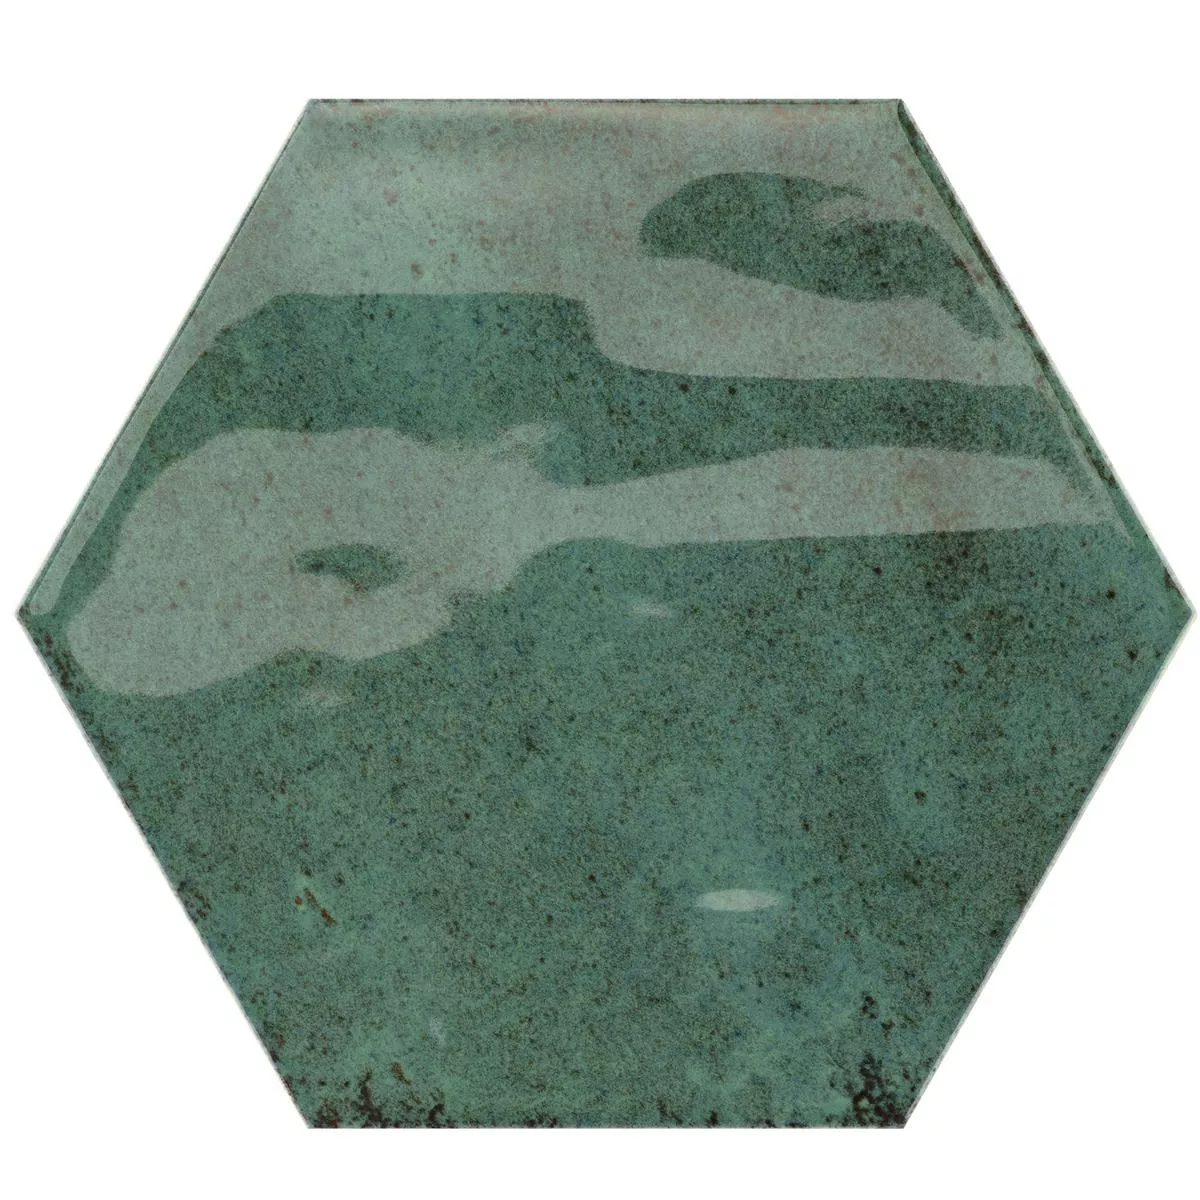 Próbka Płytki Ścienne Arosa Błyszczący Karbowany Sześciokąt Szmaragdowo-Zielony 17,3x15cm